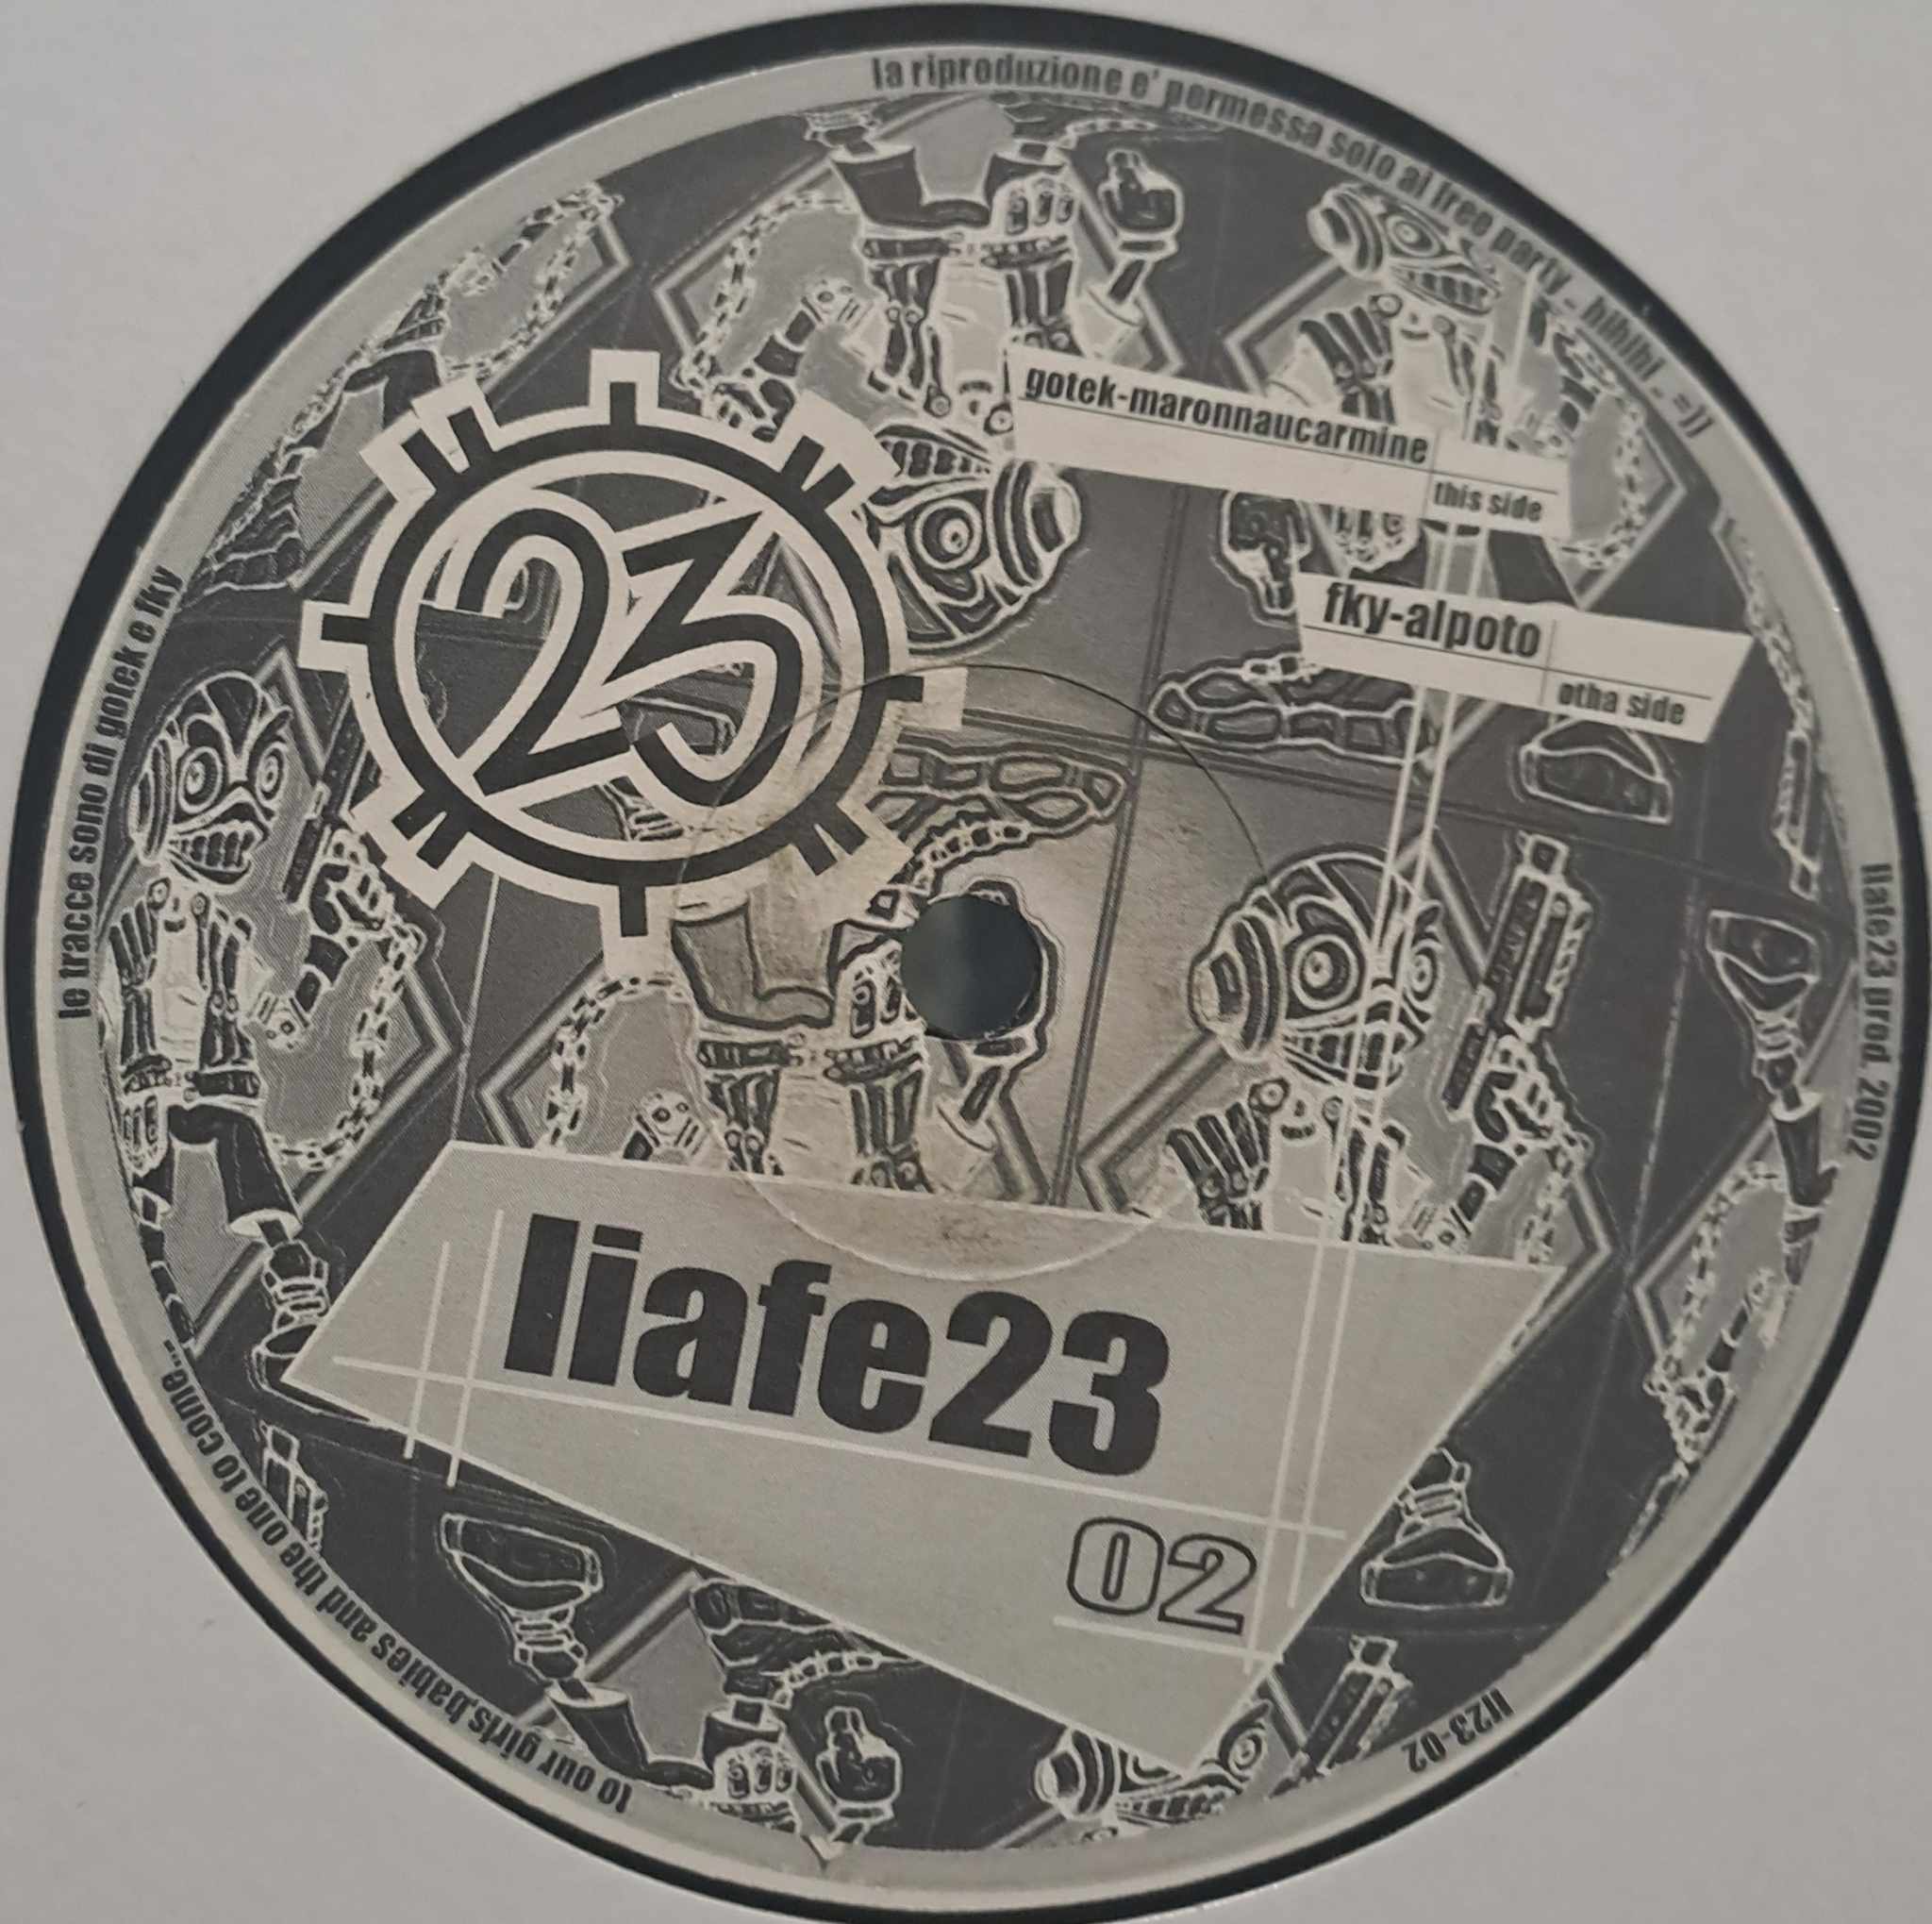 Liafe 23 02 - vinyle freetekno